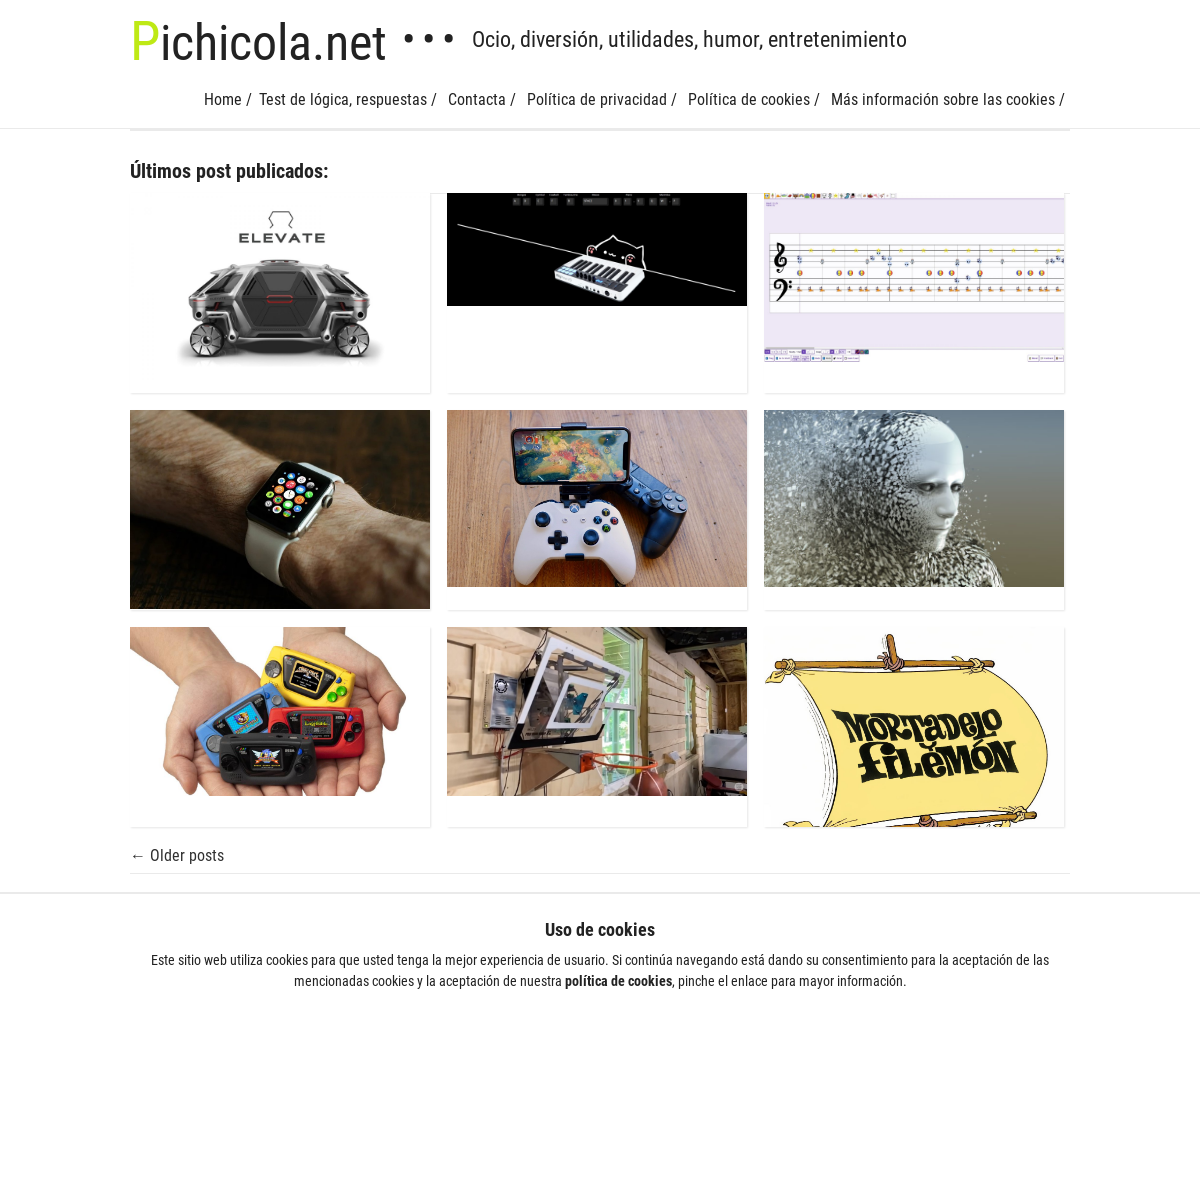 A complete backup of pichicola.com